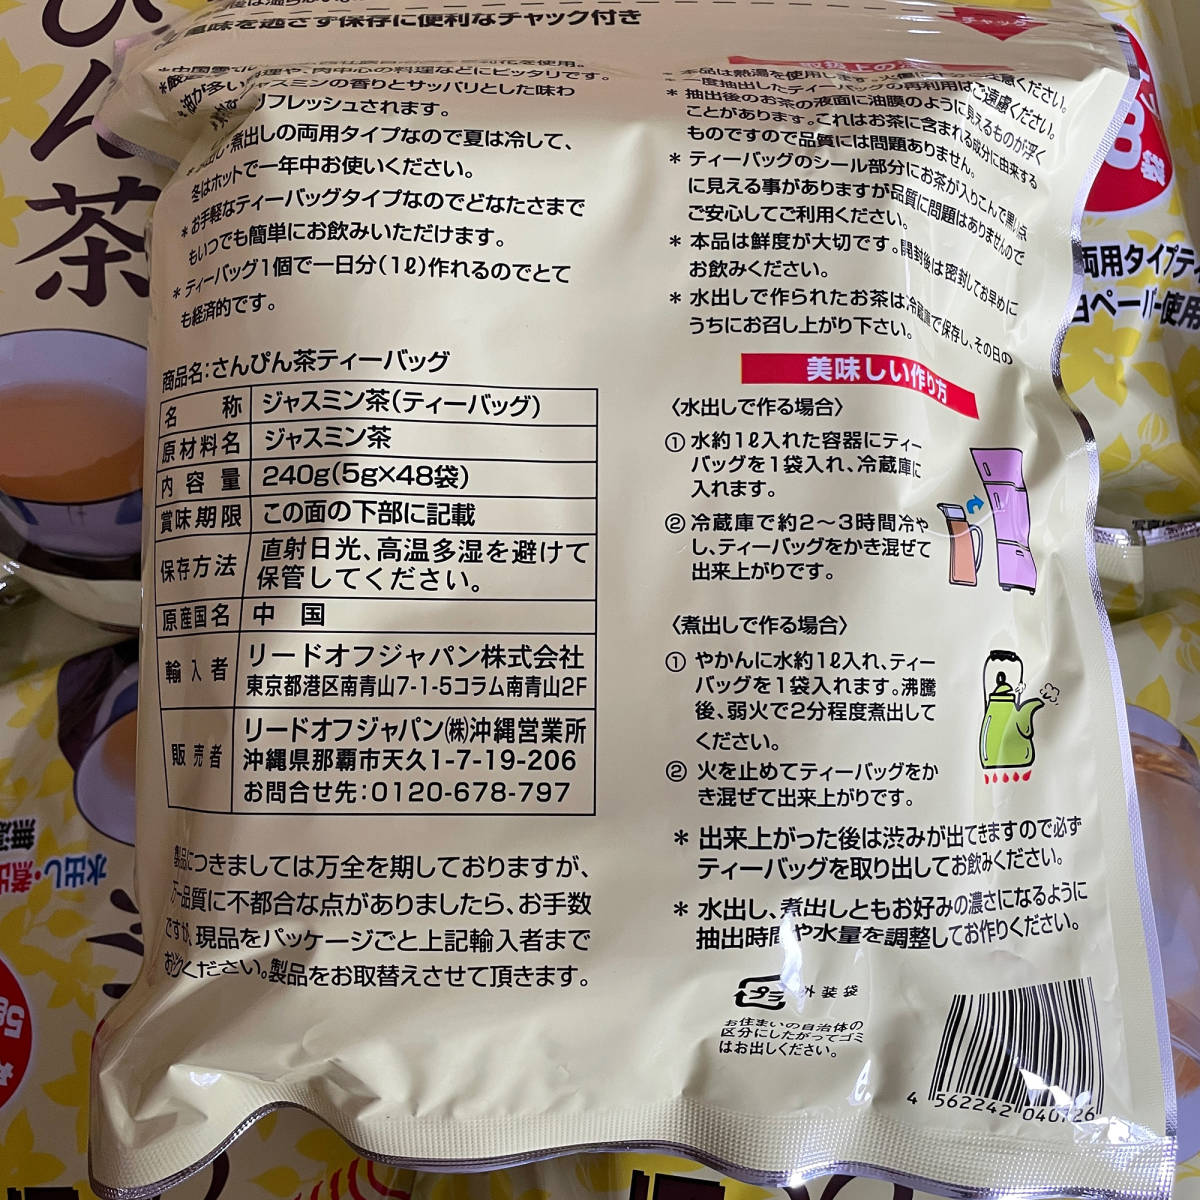 沖縄限定 さんぴん茶 7袋 ティーバッグ ジャスミンティー